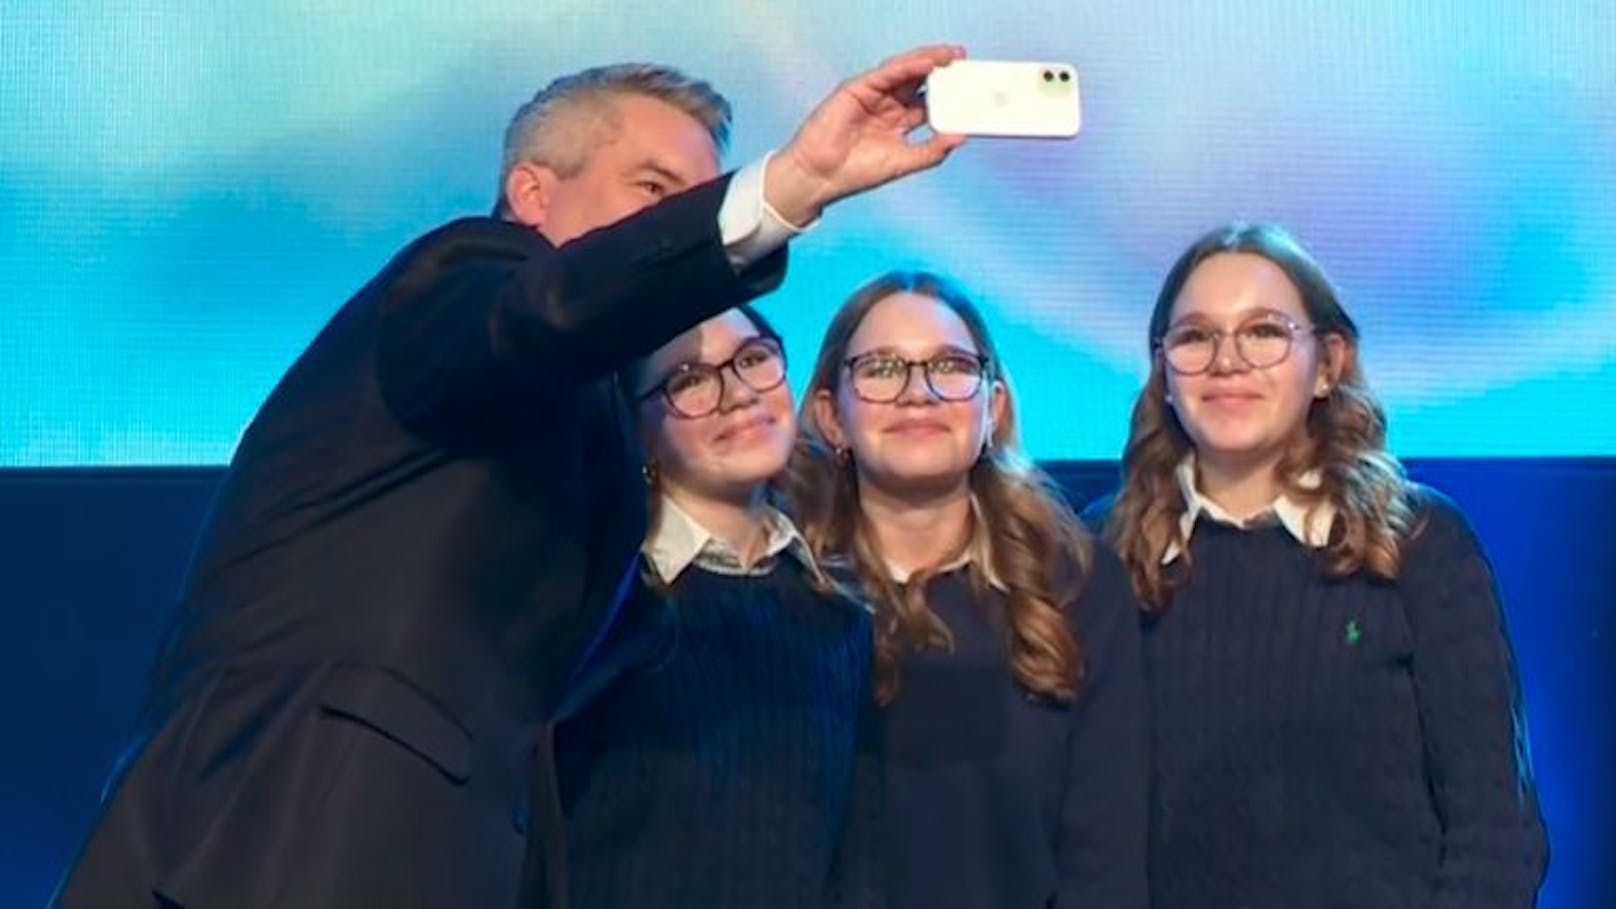 Karl Nehammer erfüllte Drillingsschwestern publikumswirksam ihren Selfie-Wunsch.